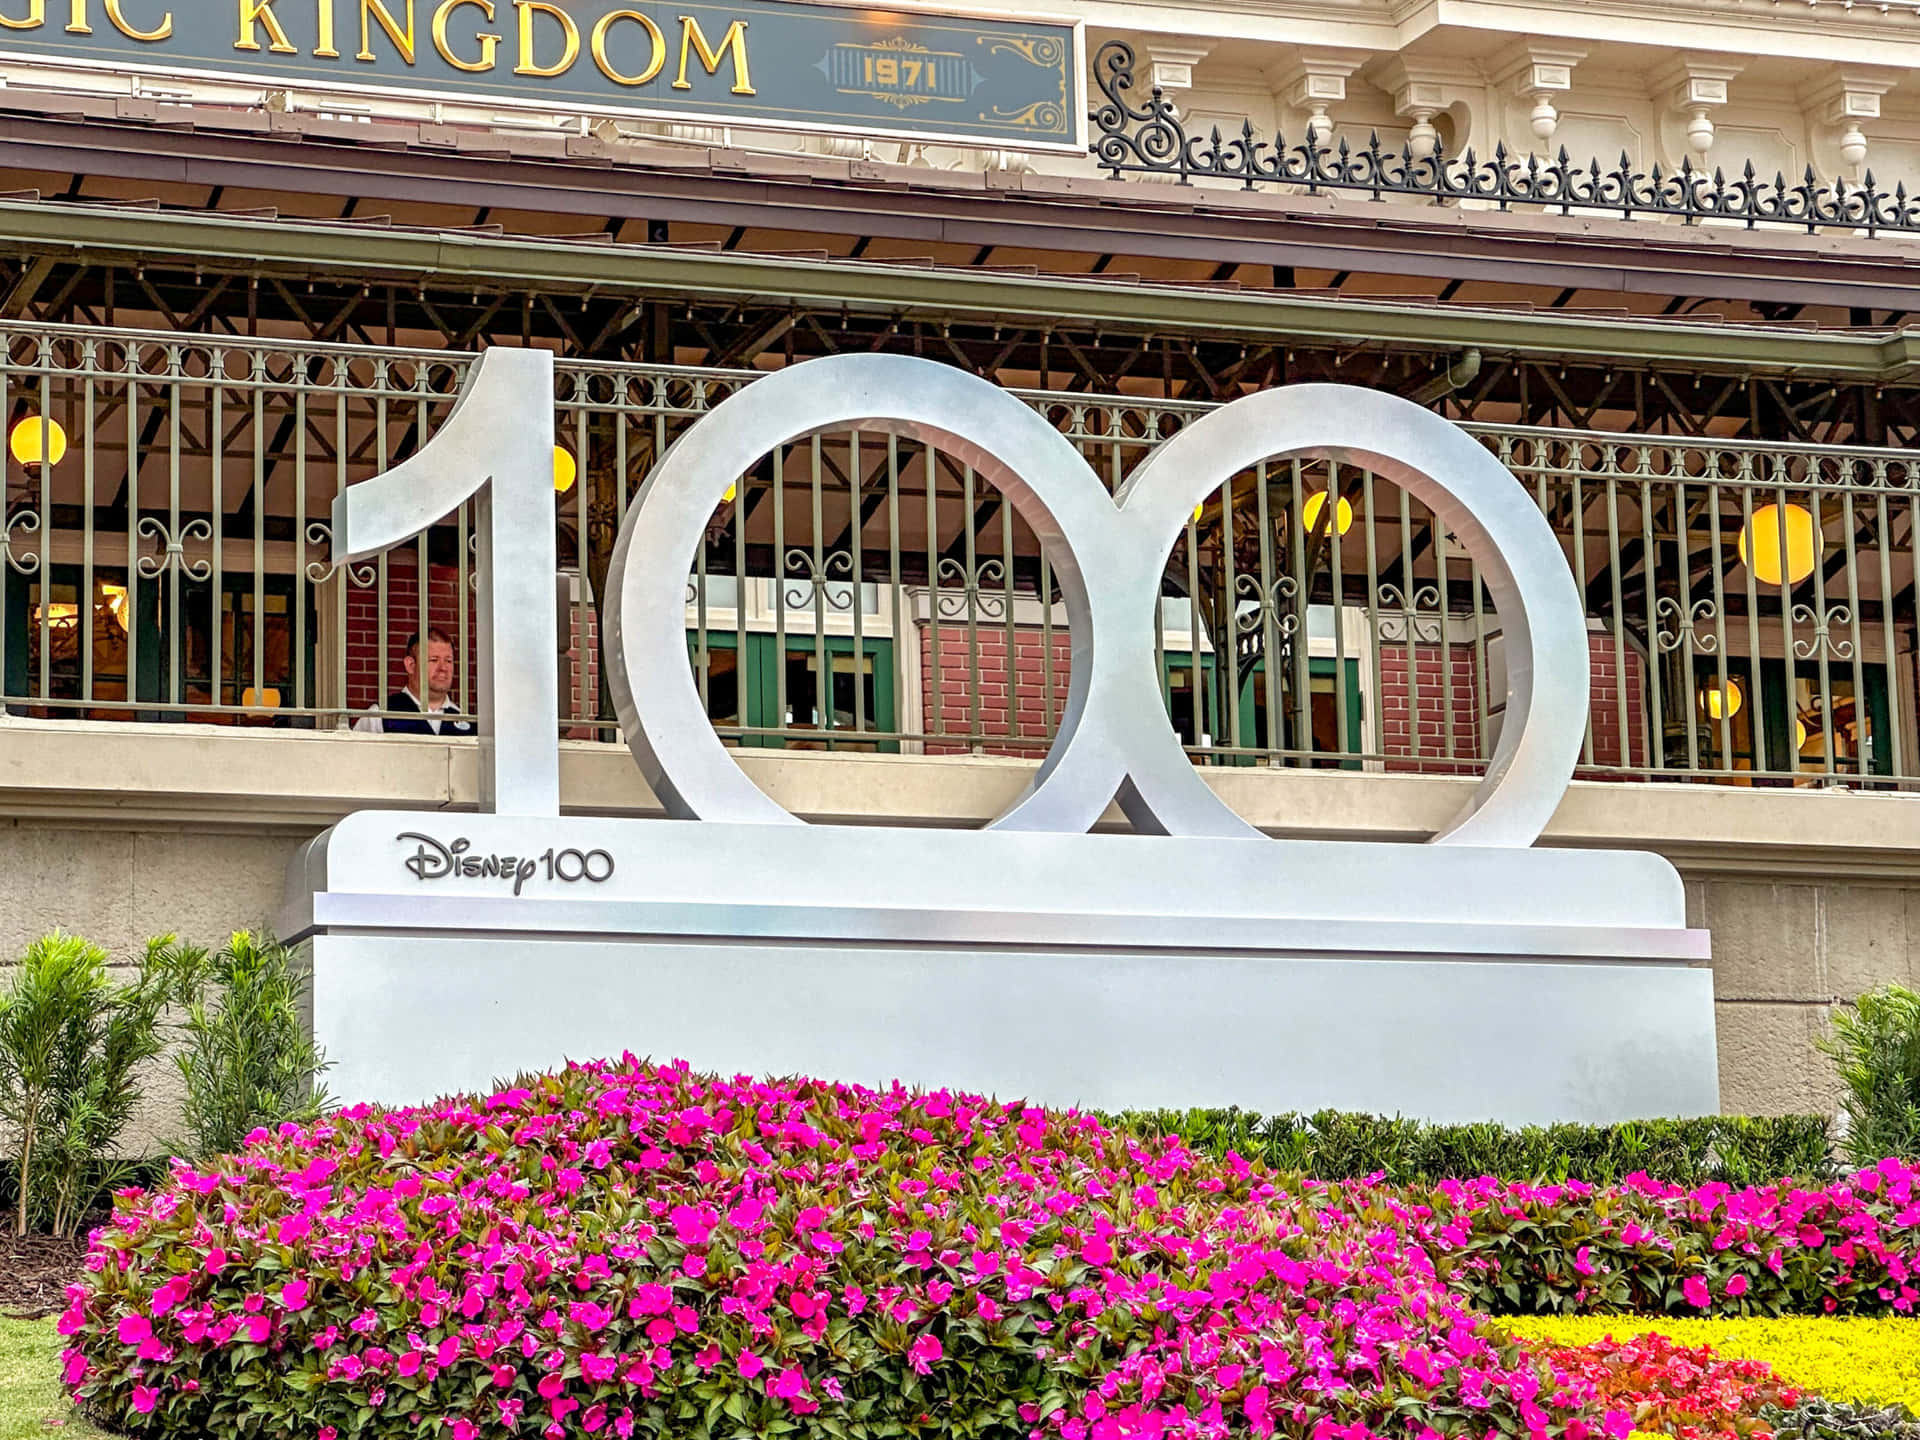 Disney100 Celebration Signat Magic Kingdom Wallpaper